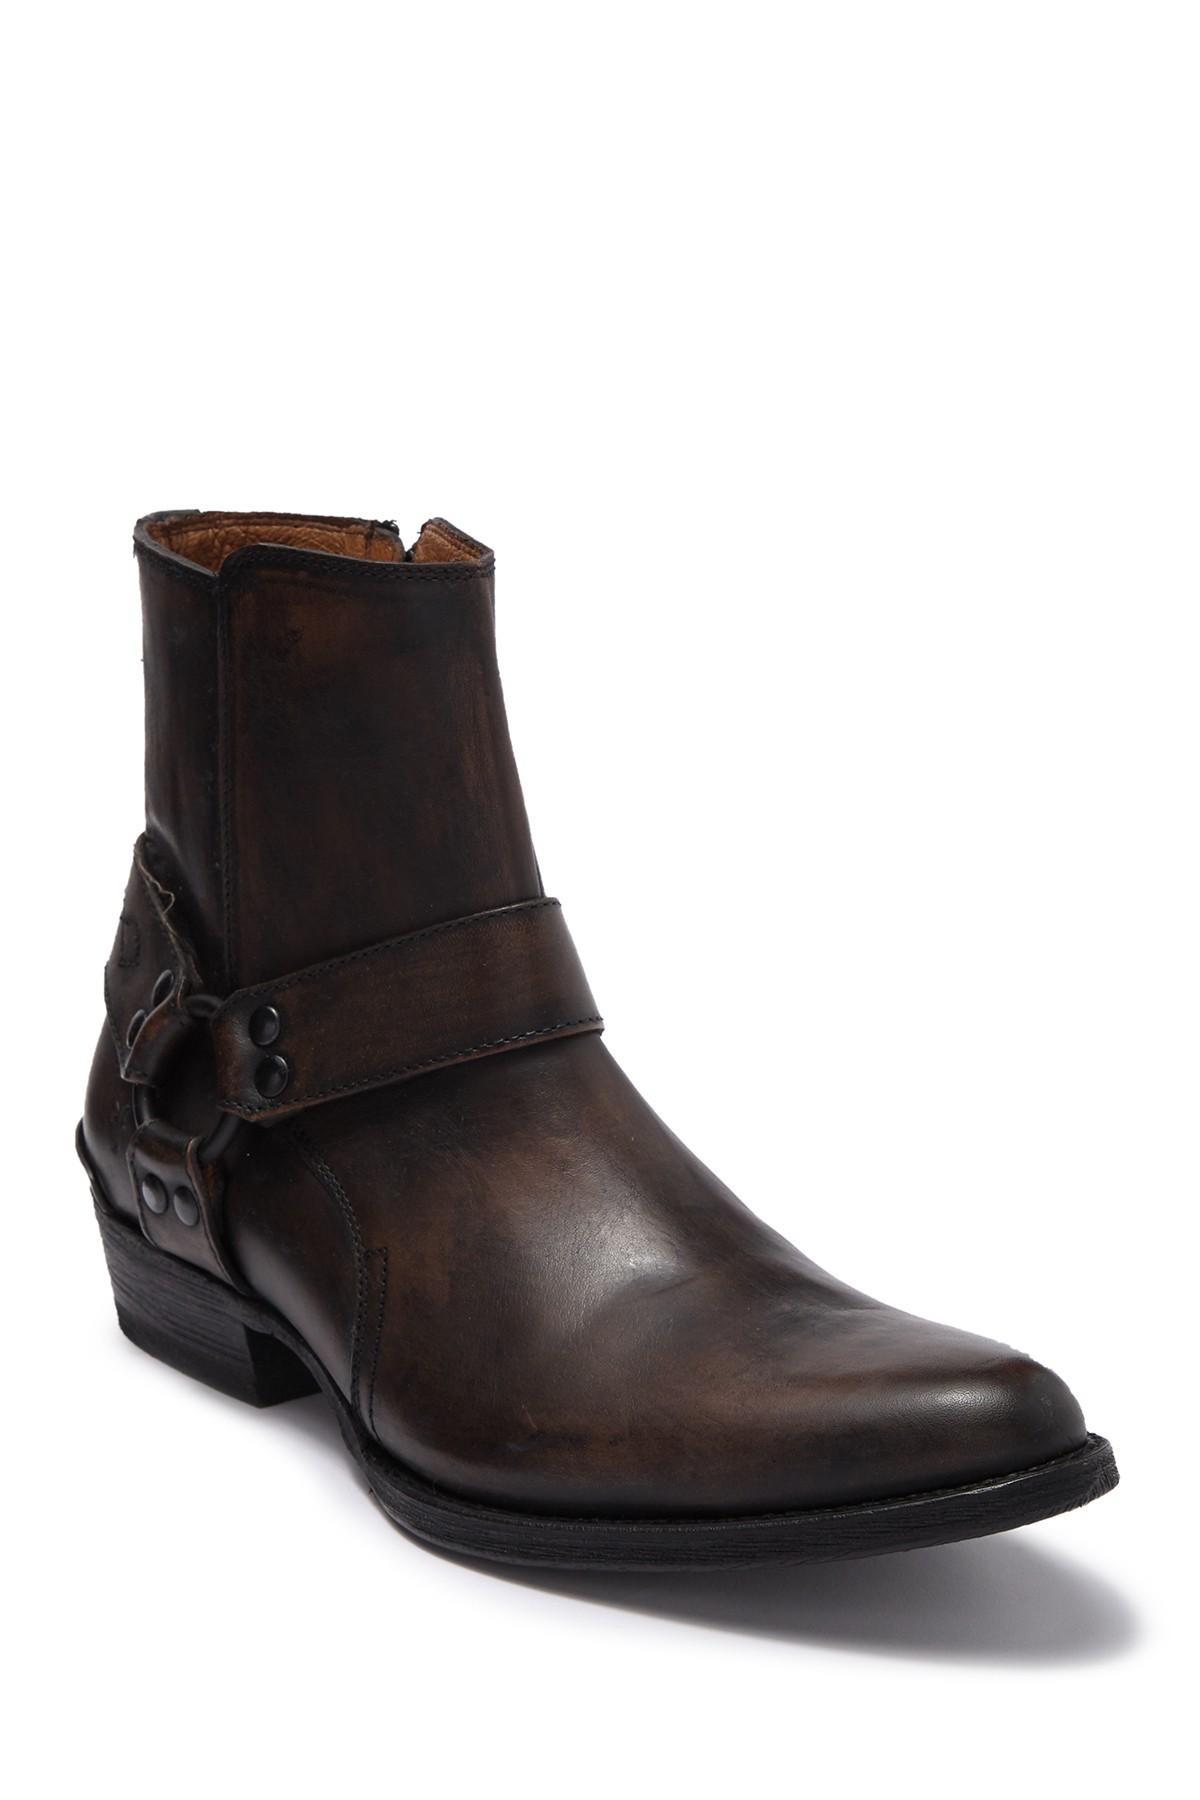 Frye Leather Austin Inside Zip Harness Boot in Black for Men - Lyst